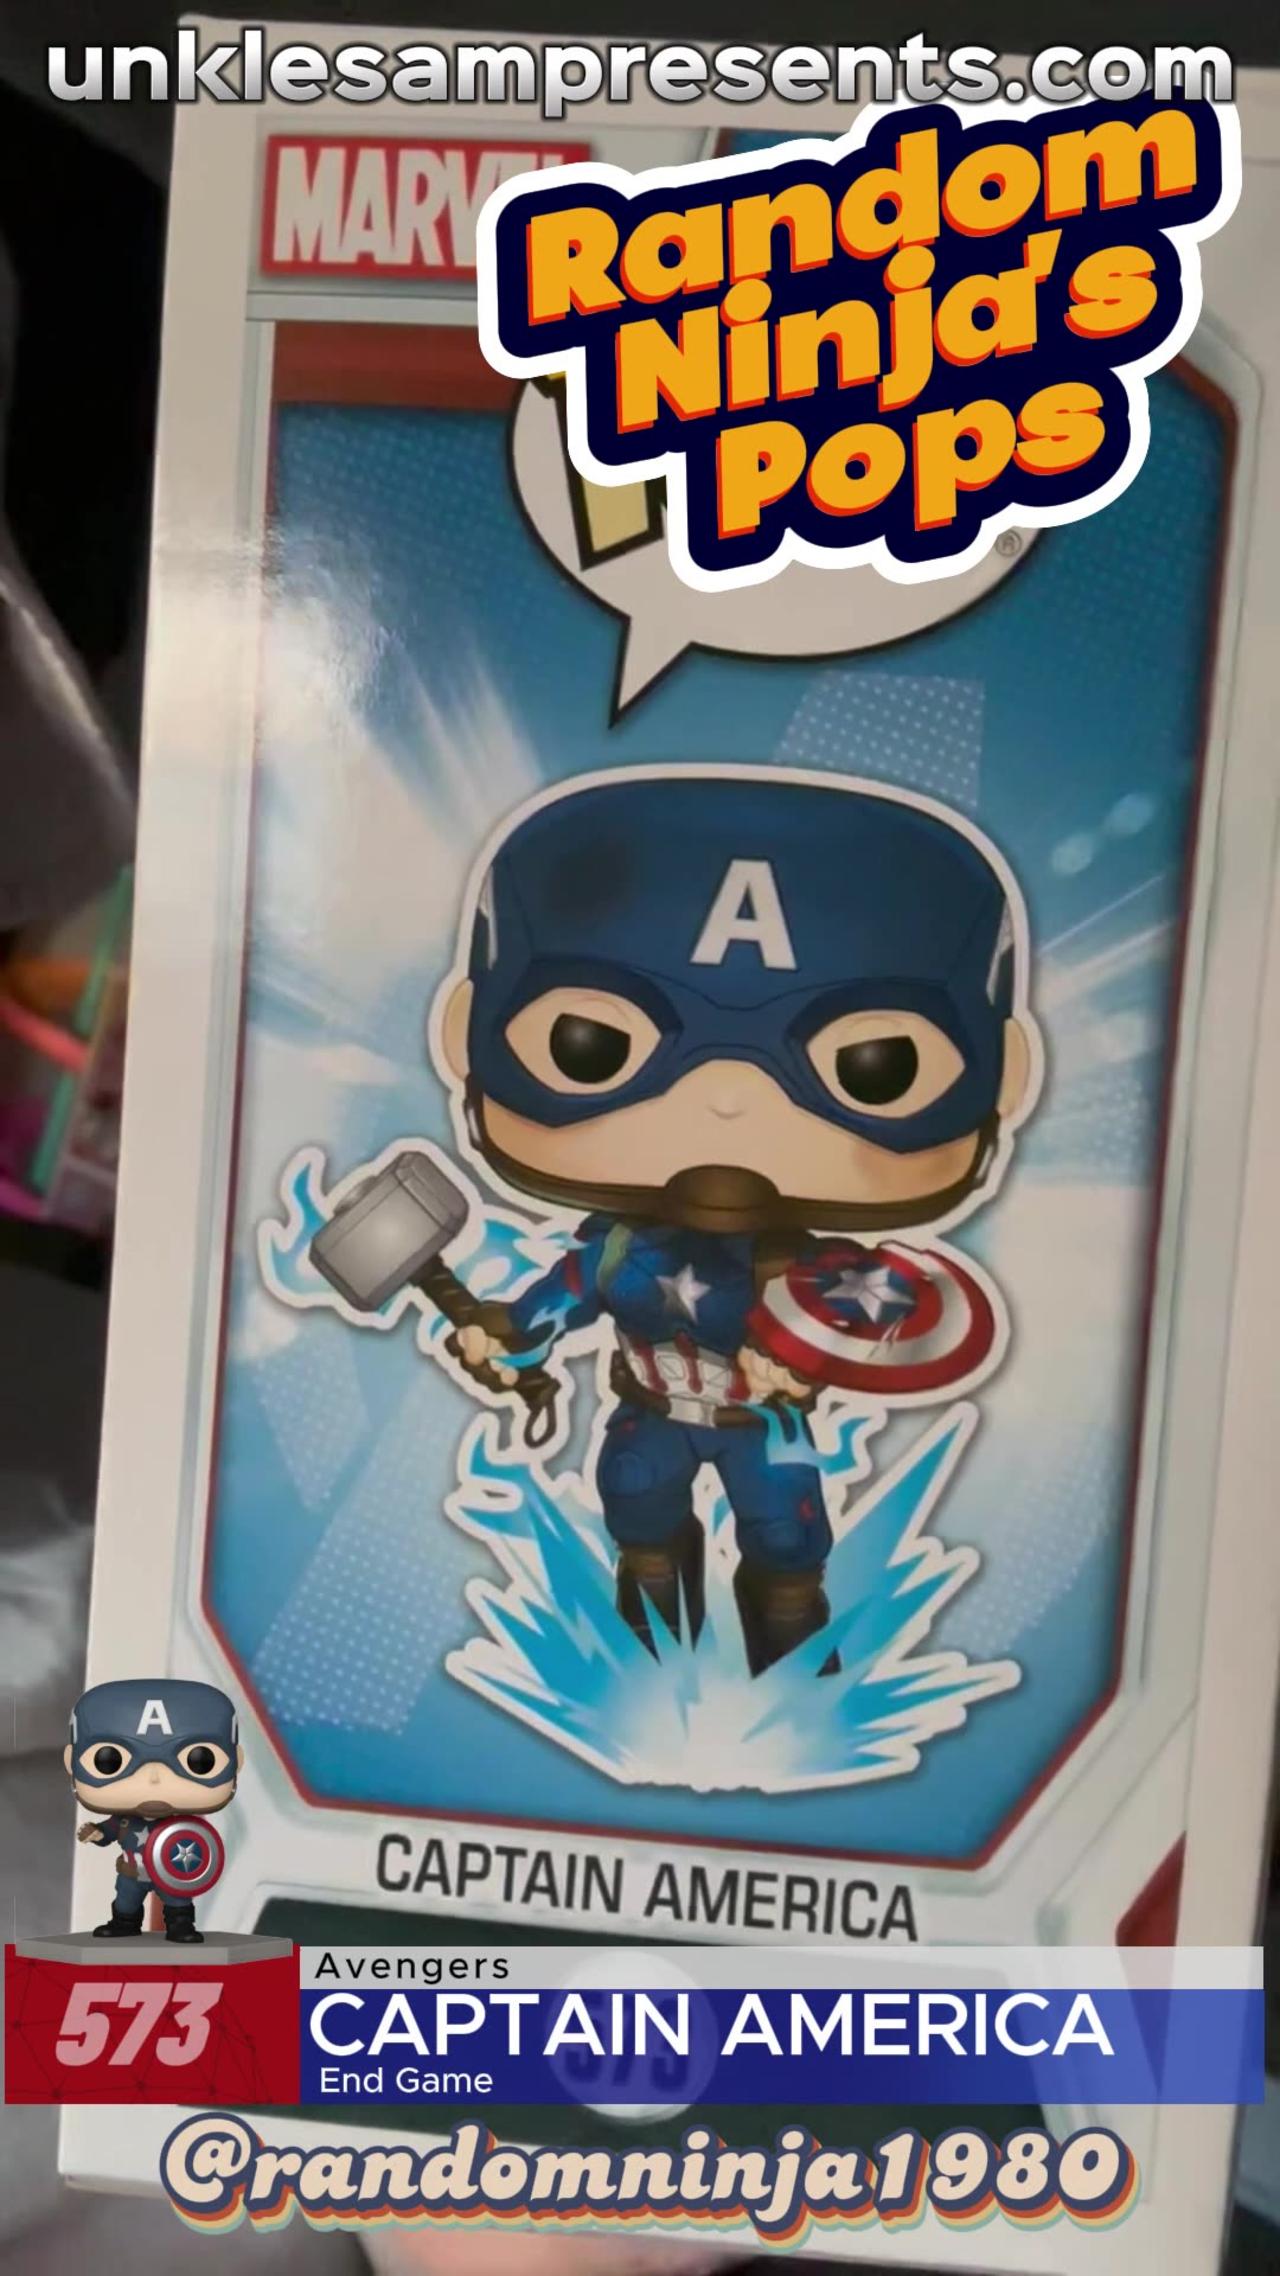 Funko Pop Friday: Avengers Captain America Special with Random Ninja